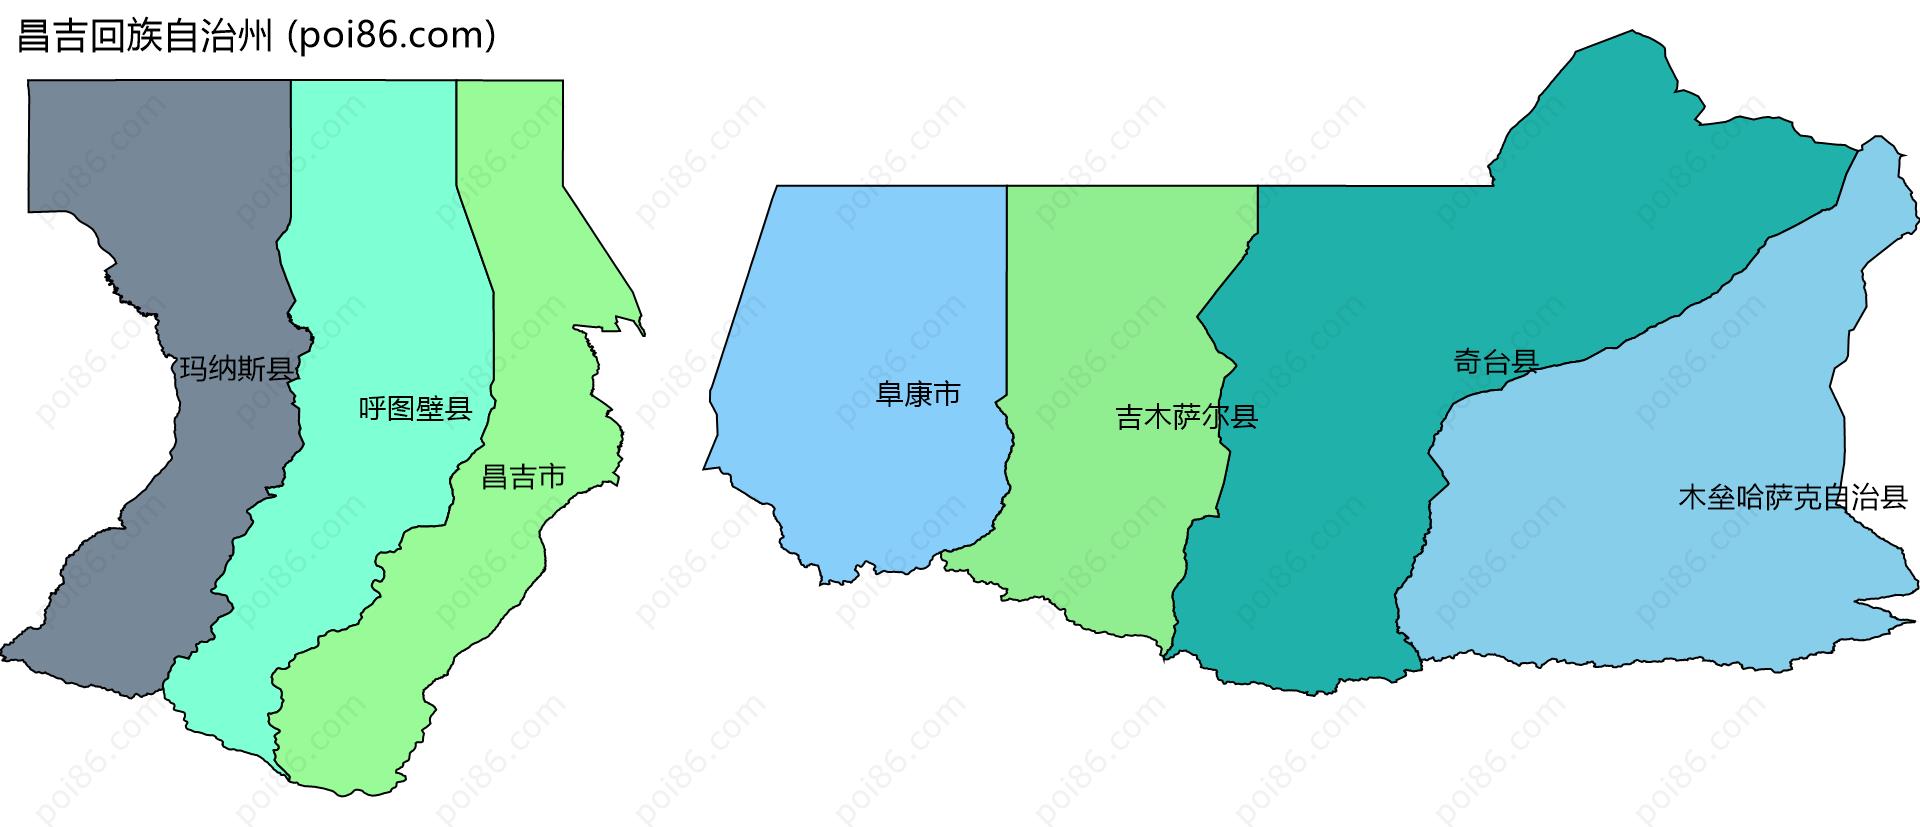 昌吉回族自治州边界地图